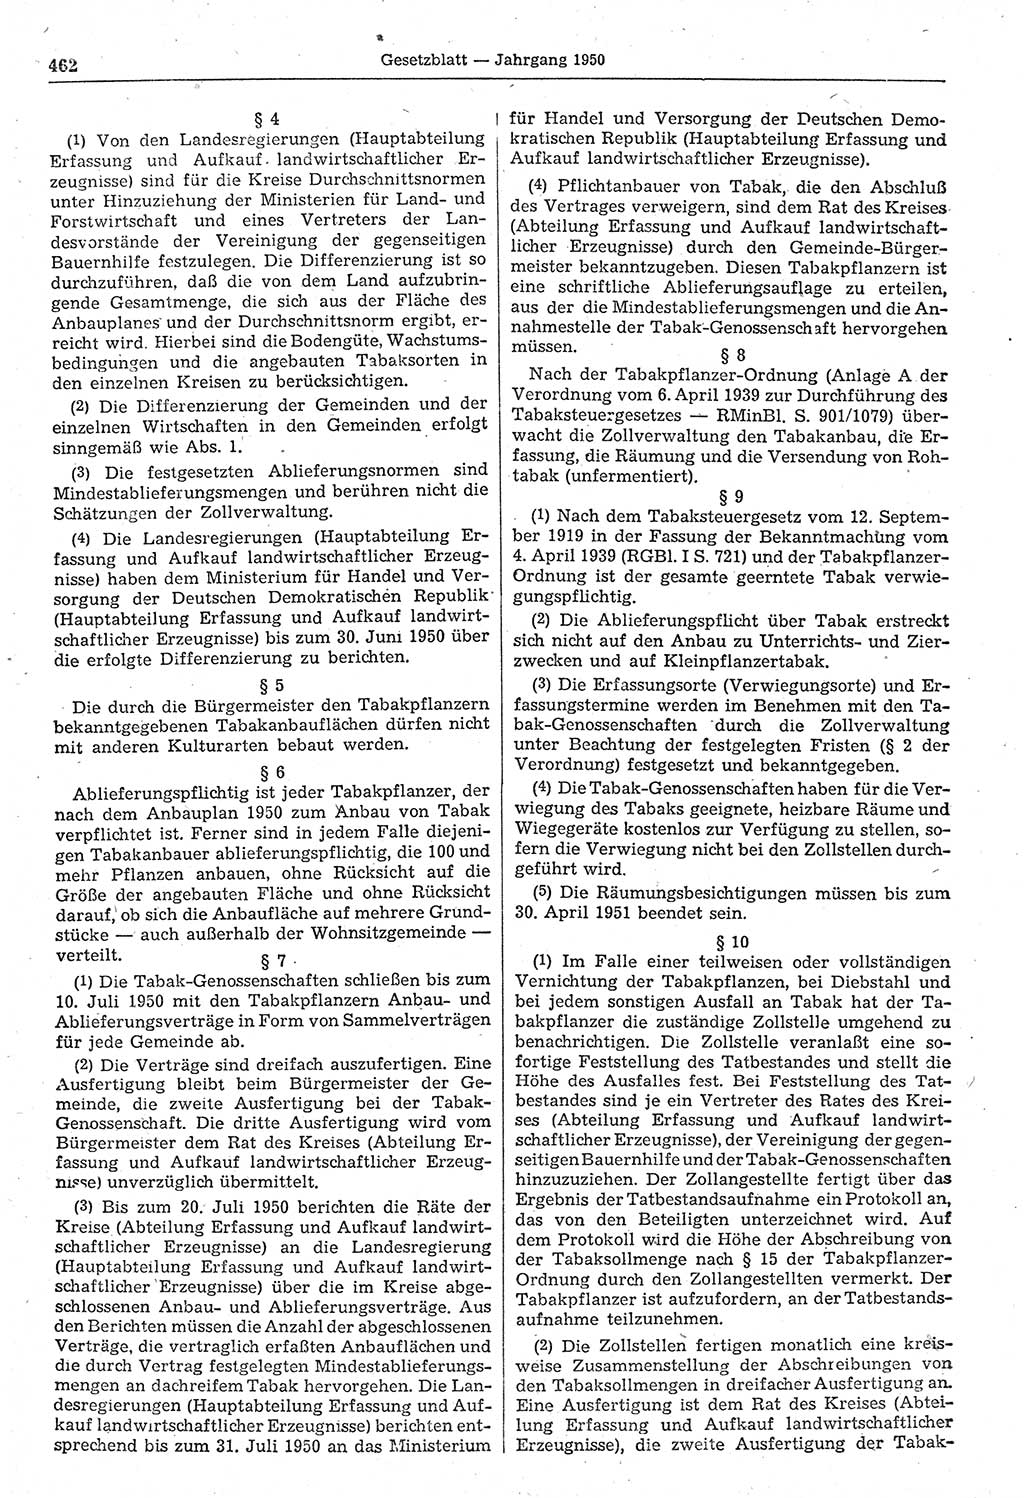 Gesetzblatt (GBl.) der Deutschen Demokratischen Republik (DDR) 1950, Seite 462 (GBl. DDR 1950, S. 462)